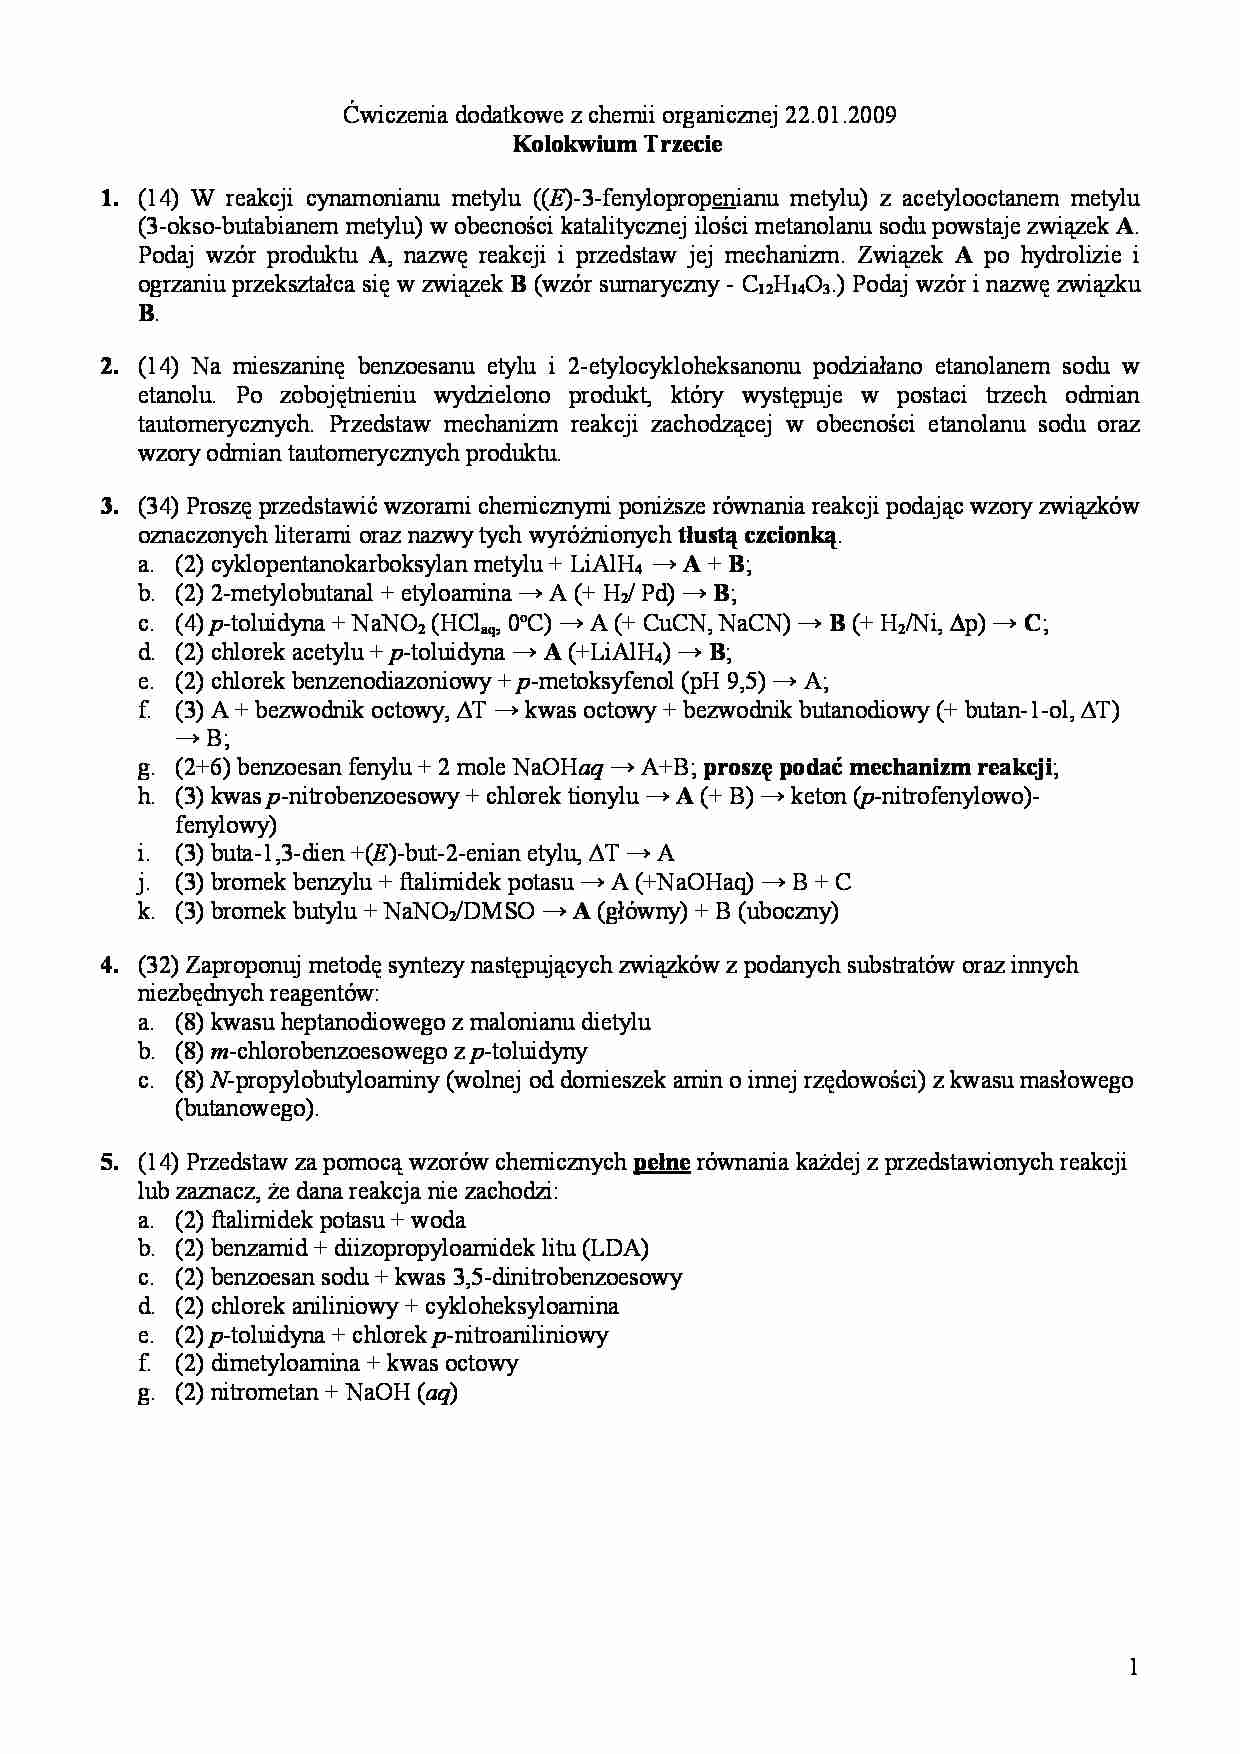   Ćwiczenia dodatkowe z chemii organicznej - Równanie reakcji - strona 1